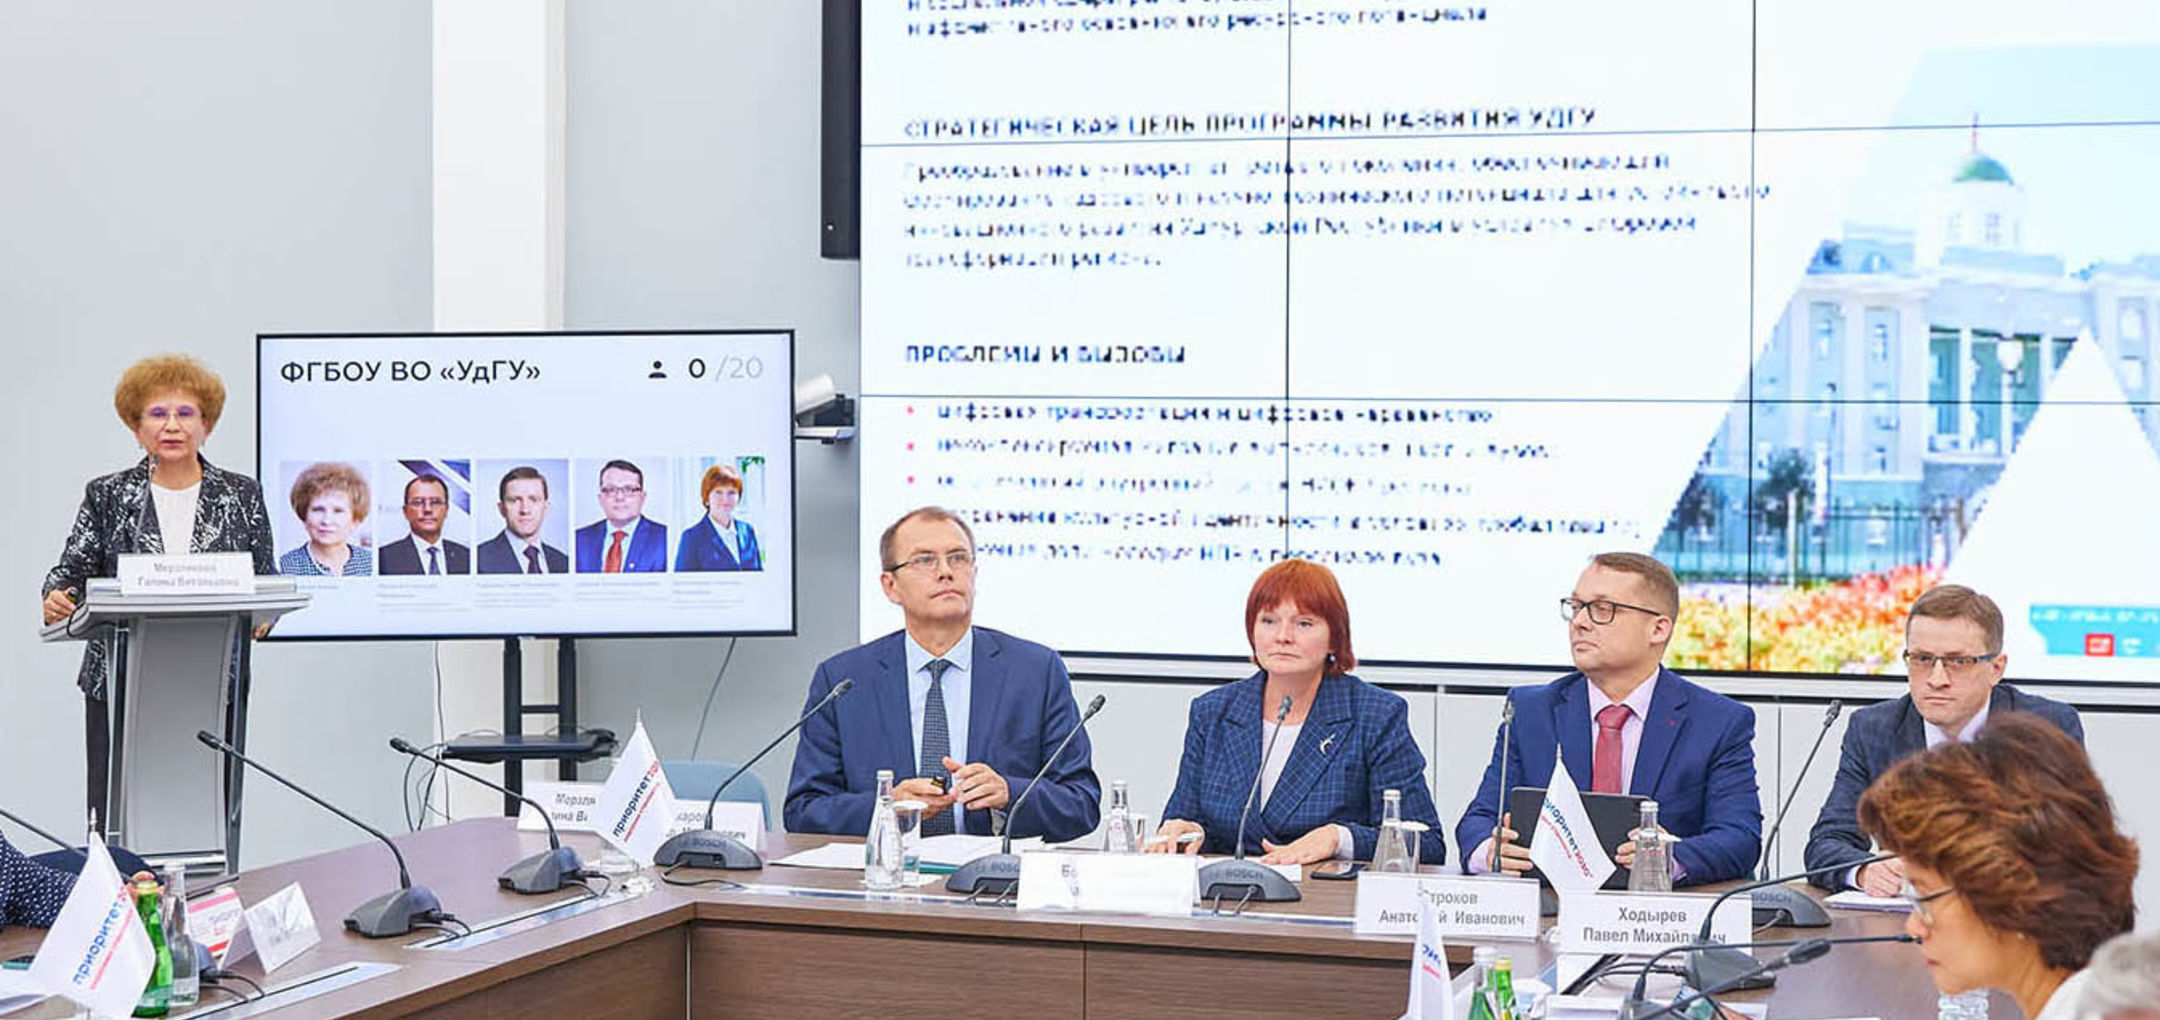 УдГУ прошёл процедуру защиты программы развития в рамках ПСАЛ «Приоритет-2030» на комиссии Минобрнауки России